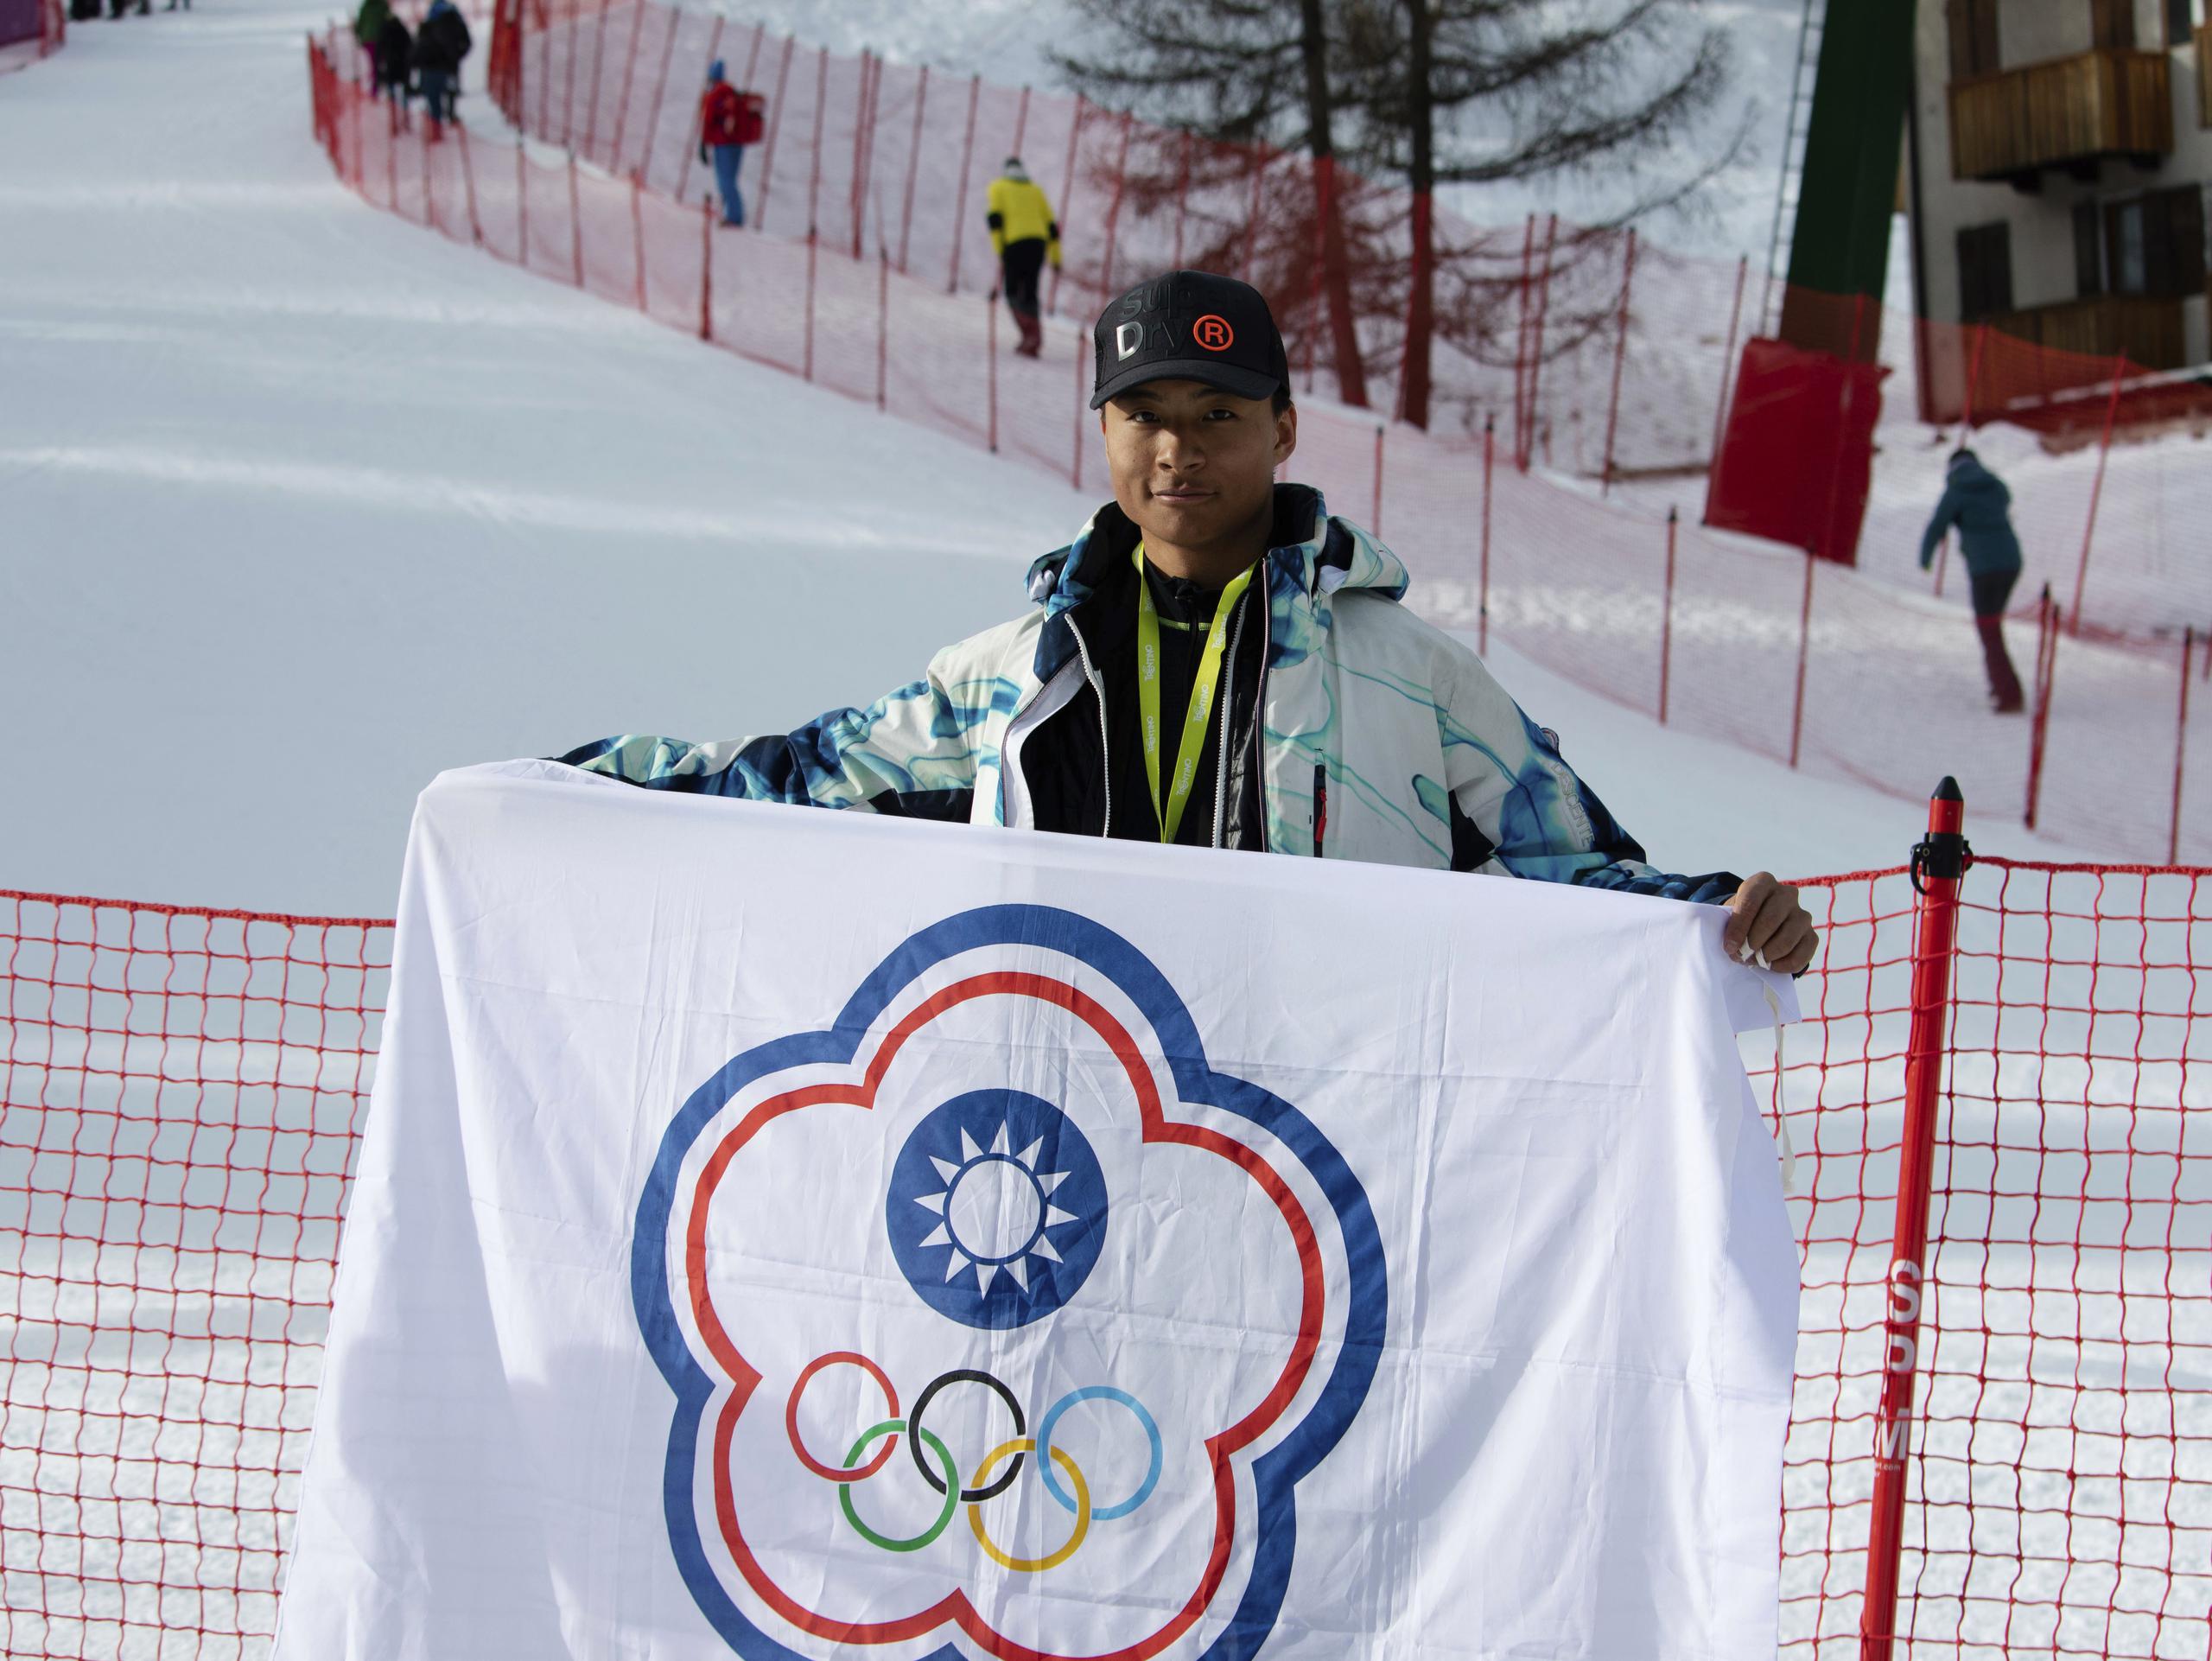 En esta foto proporcionada por Szollos Peter, el esquiador Ray Ho sostiene una bandera creada para representar a Taipéi China —el nombre bajo el cual Taiwán compite en competencias deportivas internacionales—, el 26 de febrero de 2019, en Italia.